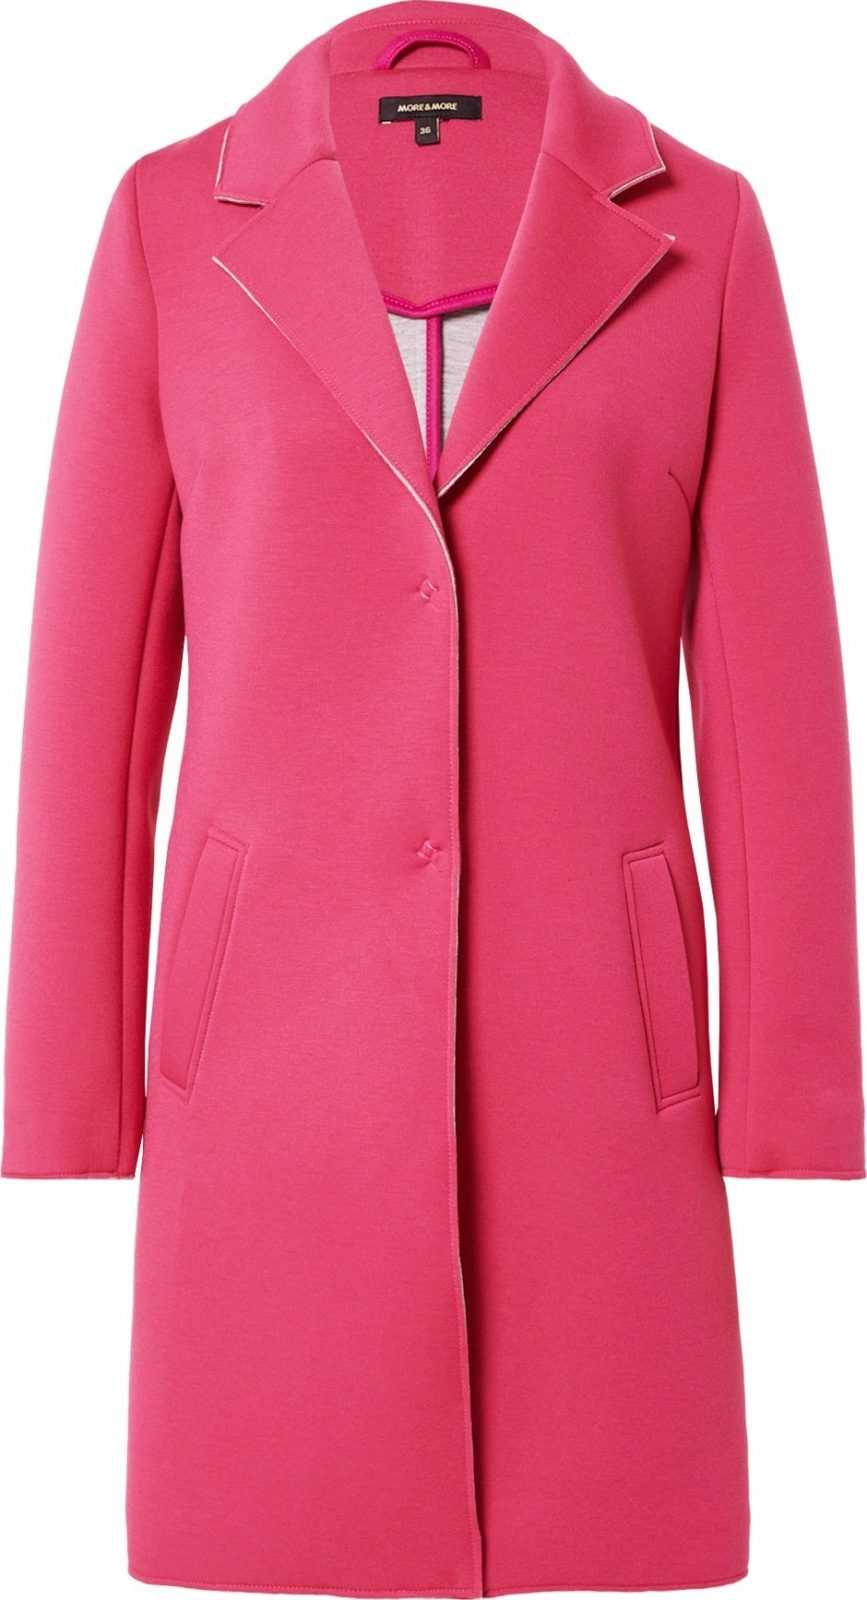 MORE & MORE Přechodný kabát pink